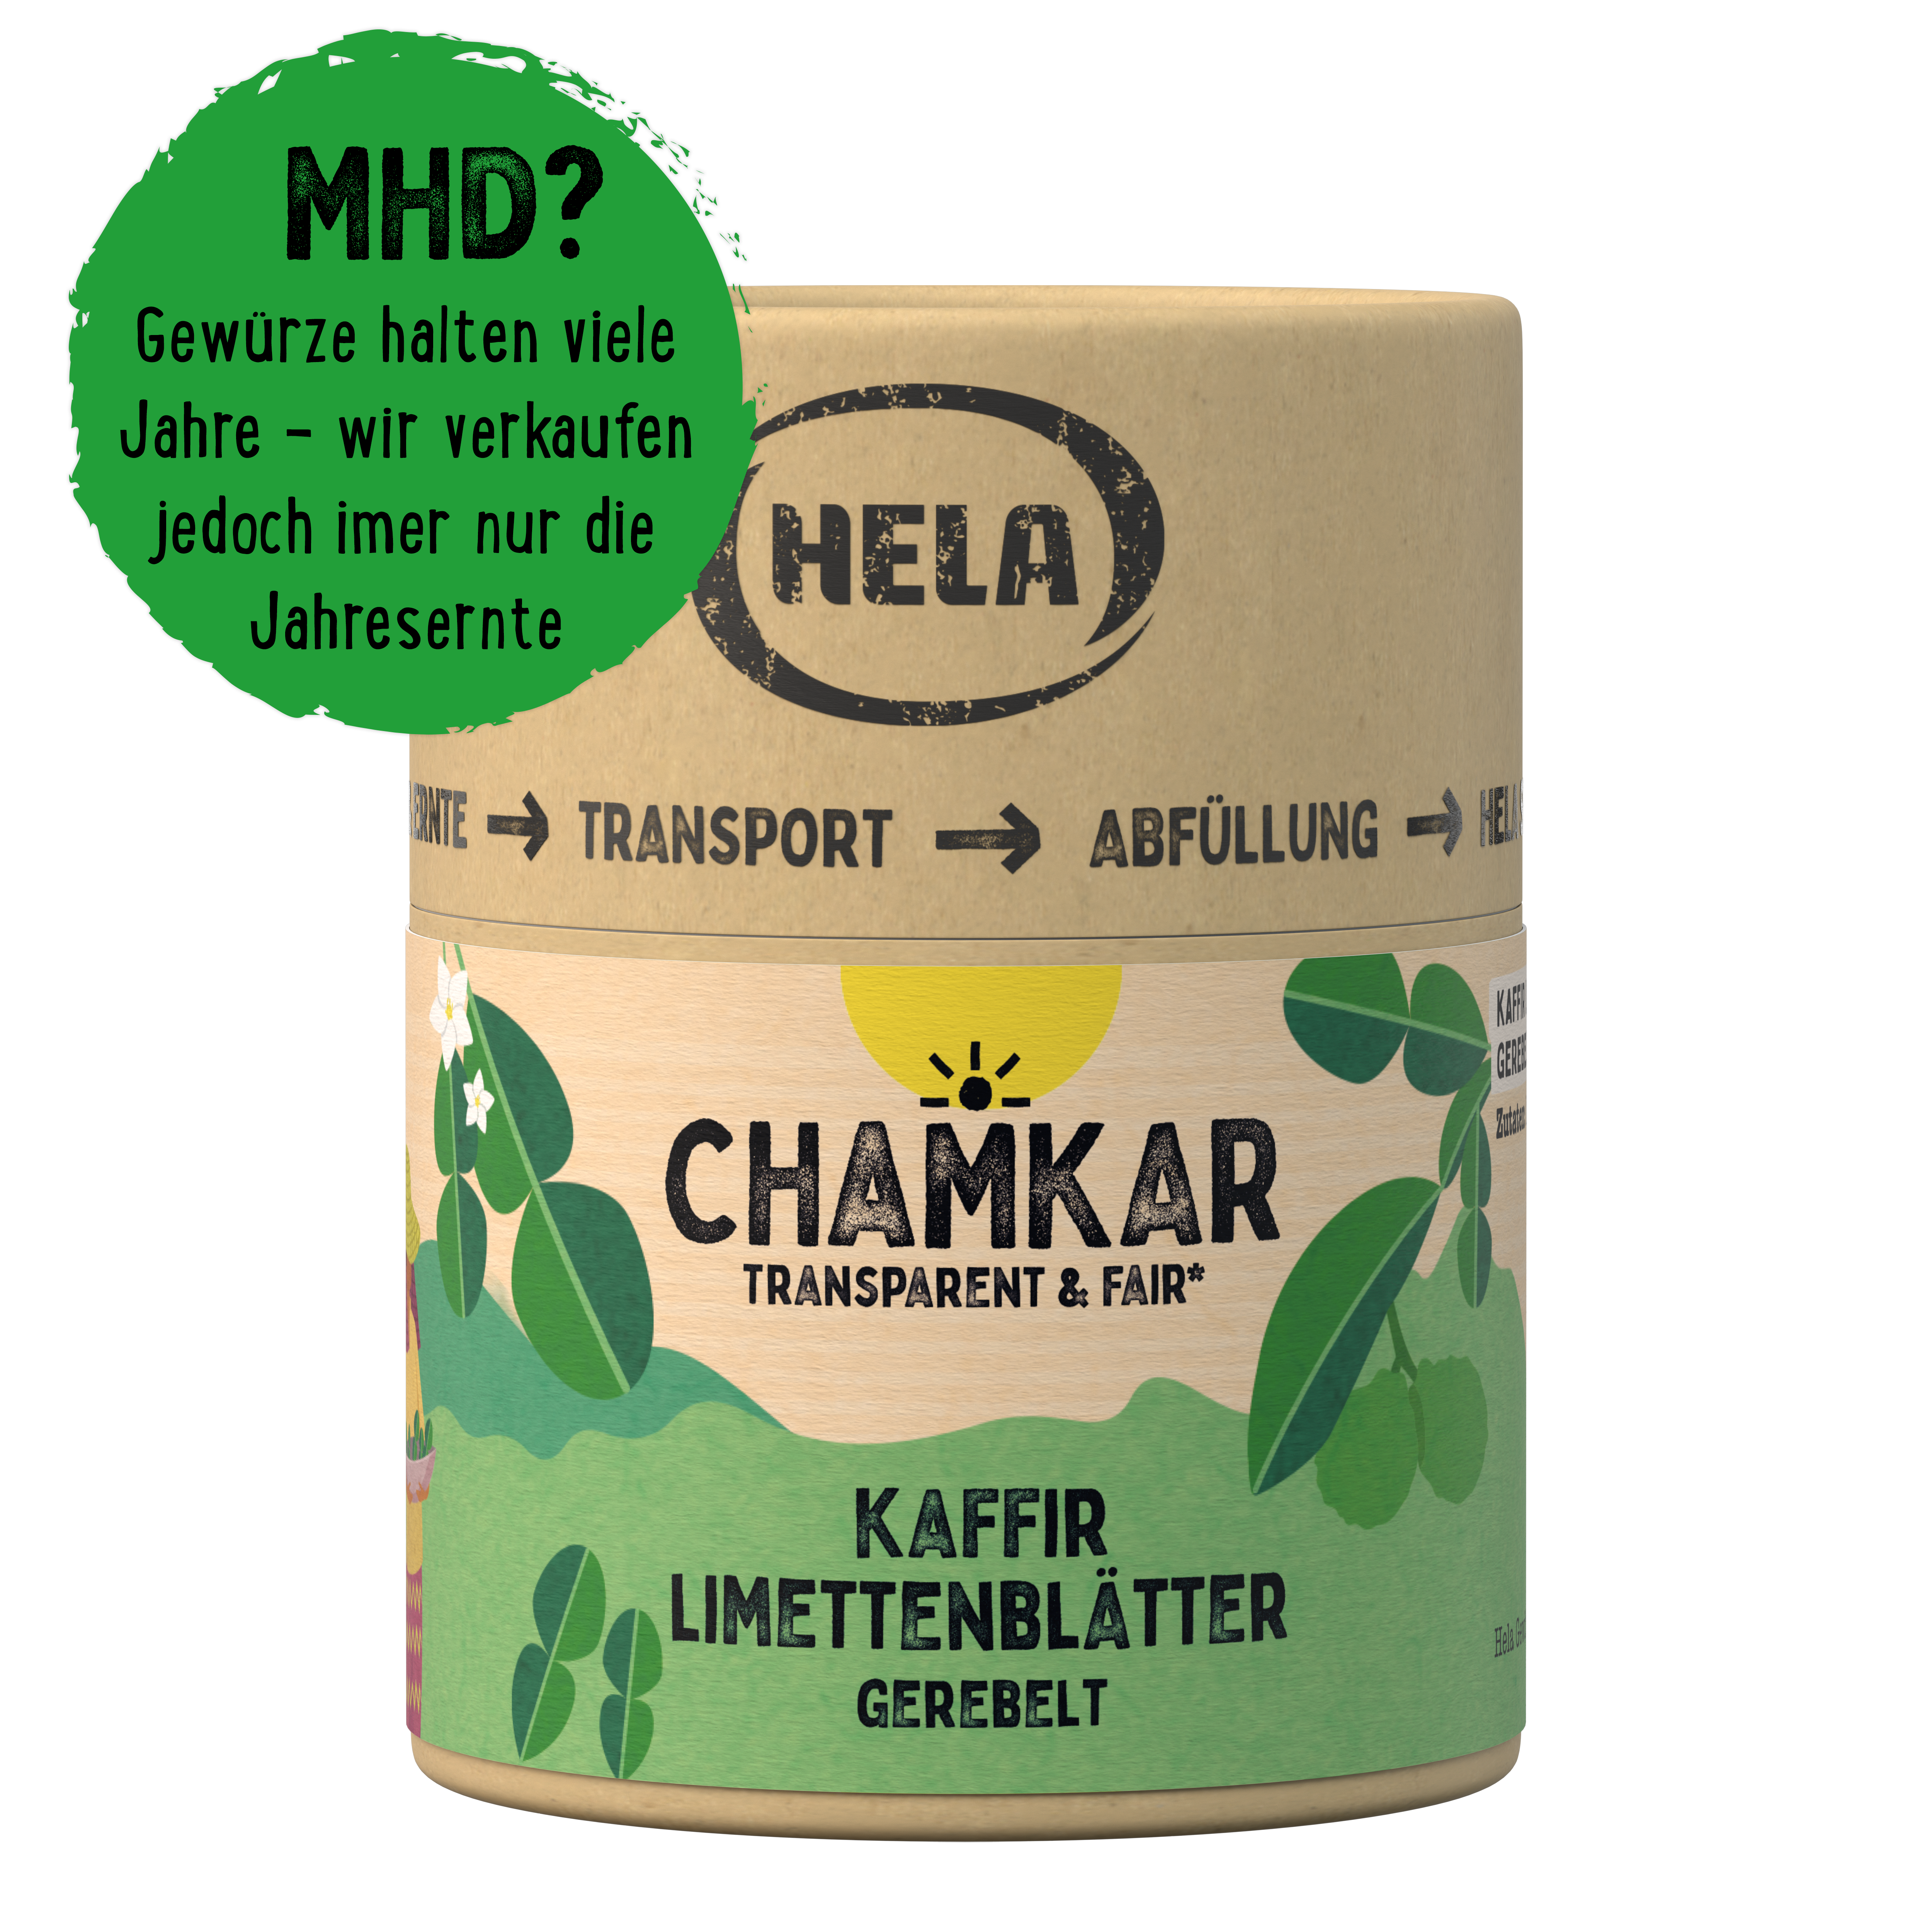 Chamkar Kaffir Limettenblätter gerebelt 25 g